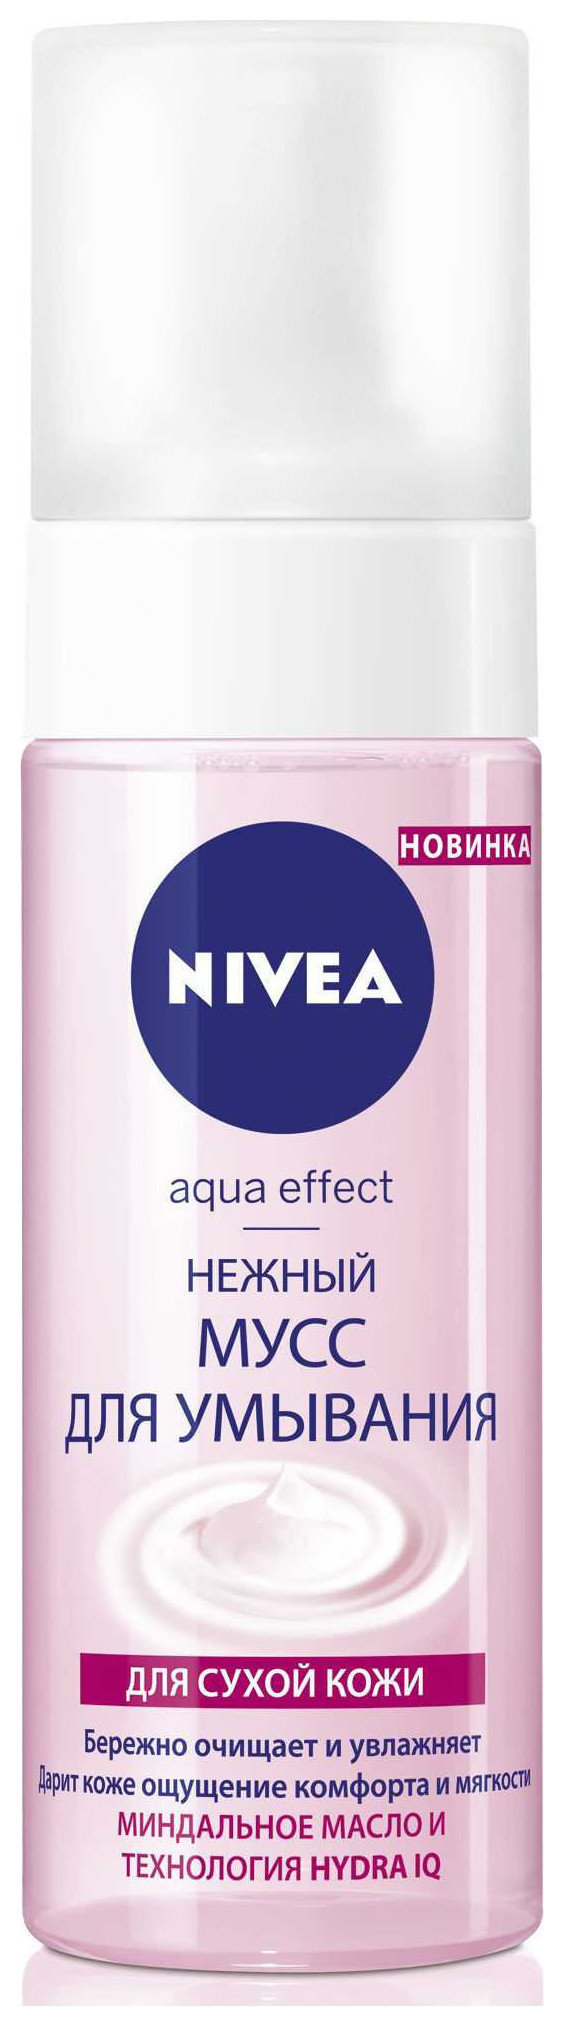 Нежный мусс для умывания Aqua effect для сухой кожи